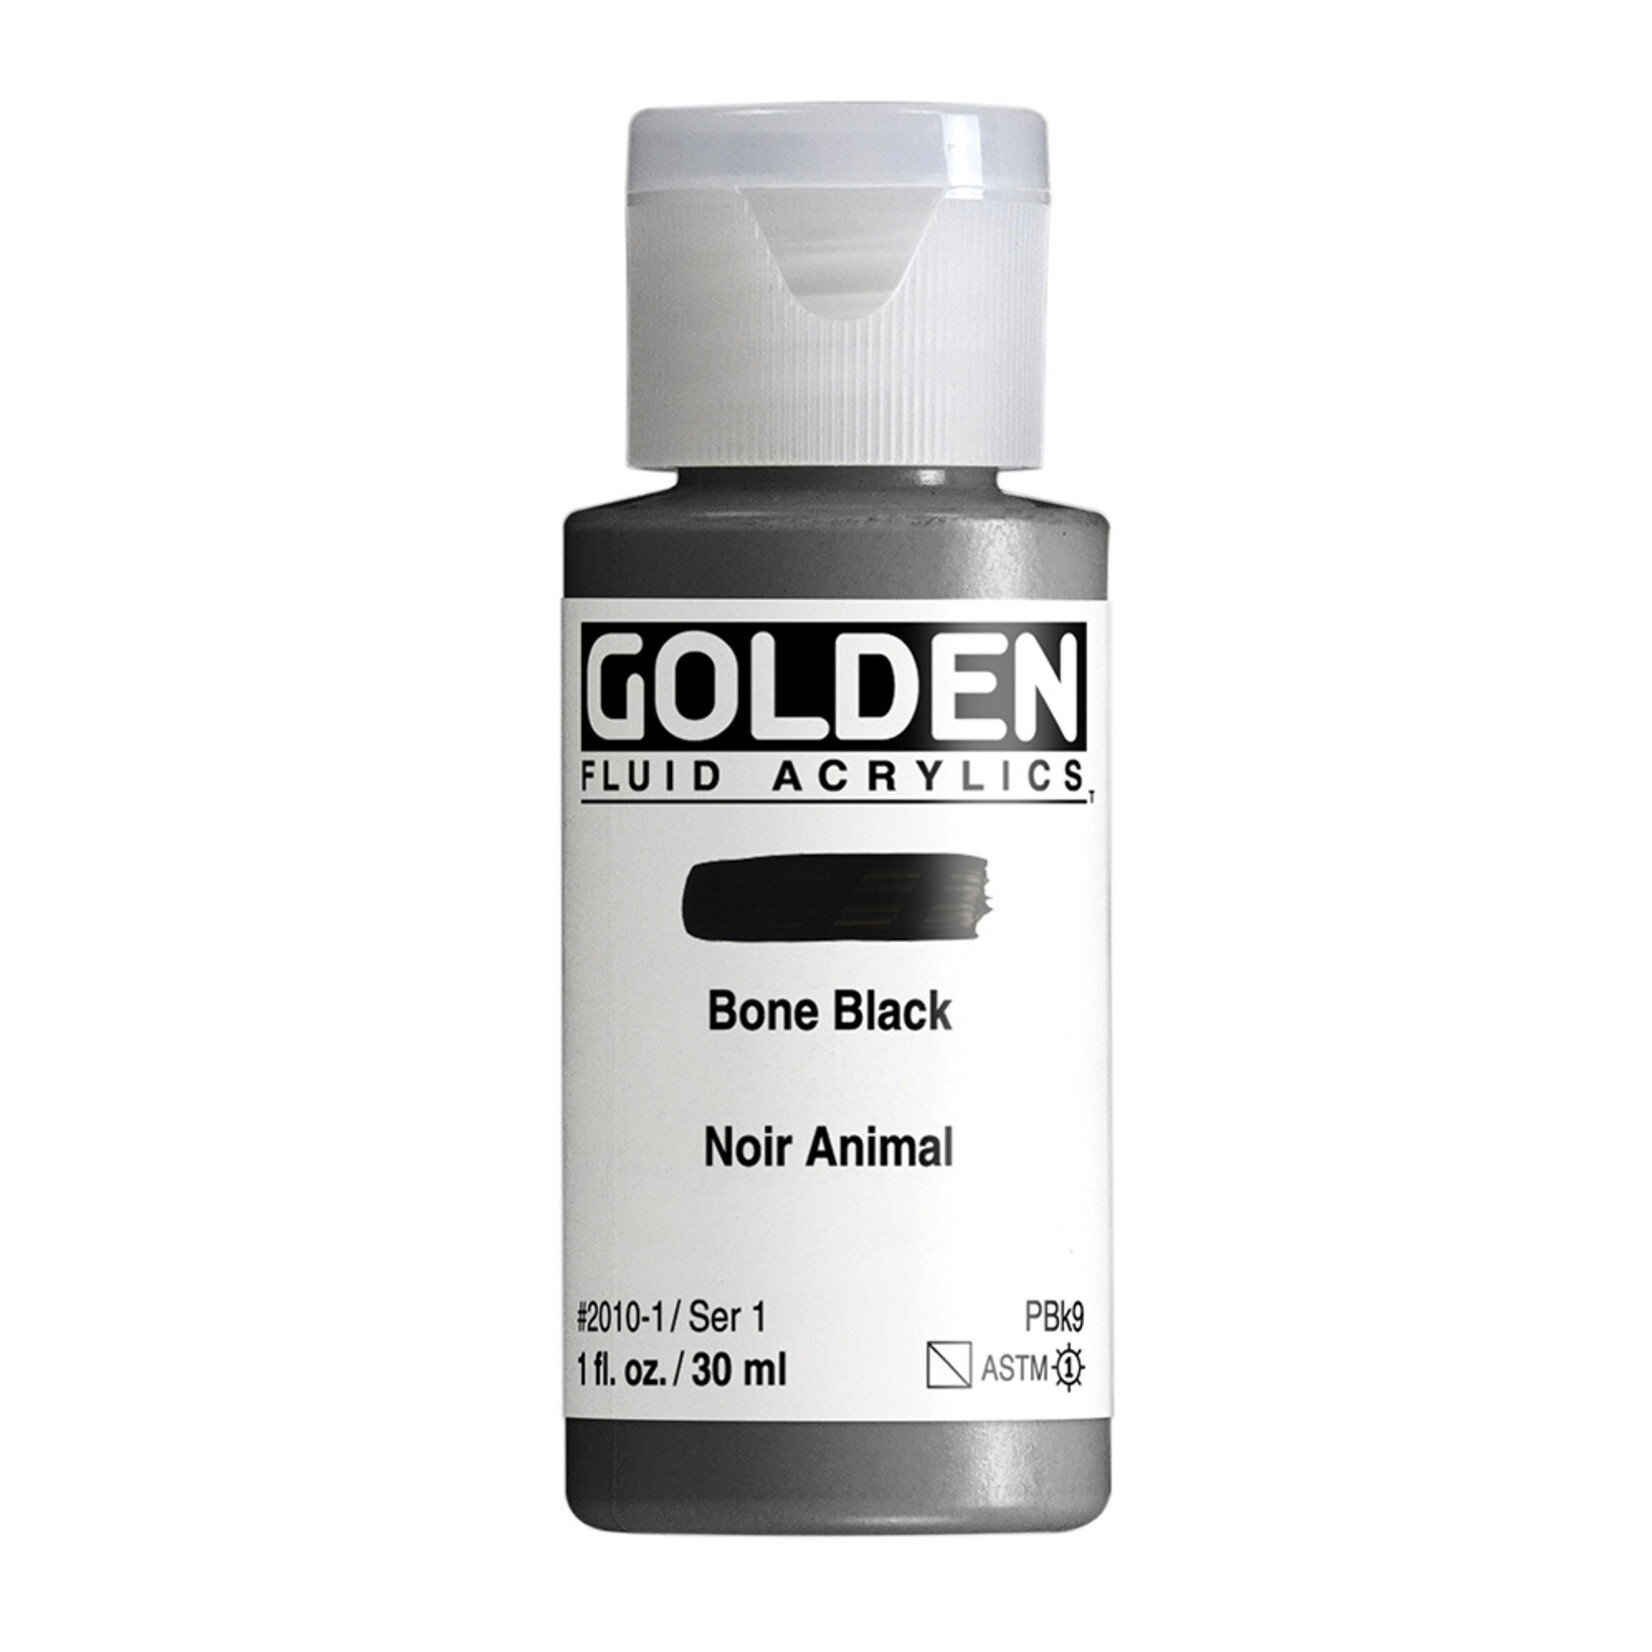 GOLDEN GOLDEN FLUID ACRYLIC 1OZ BONE BLACK